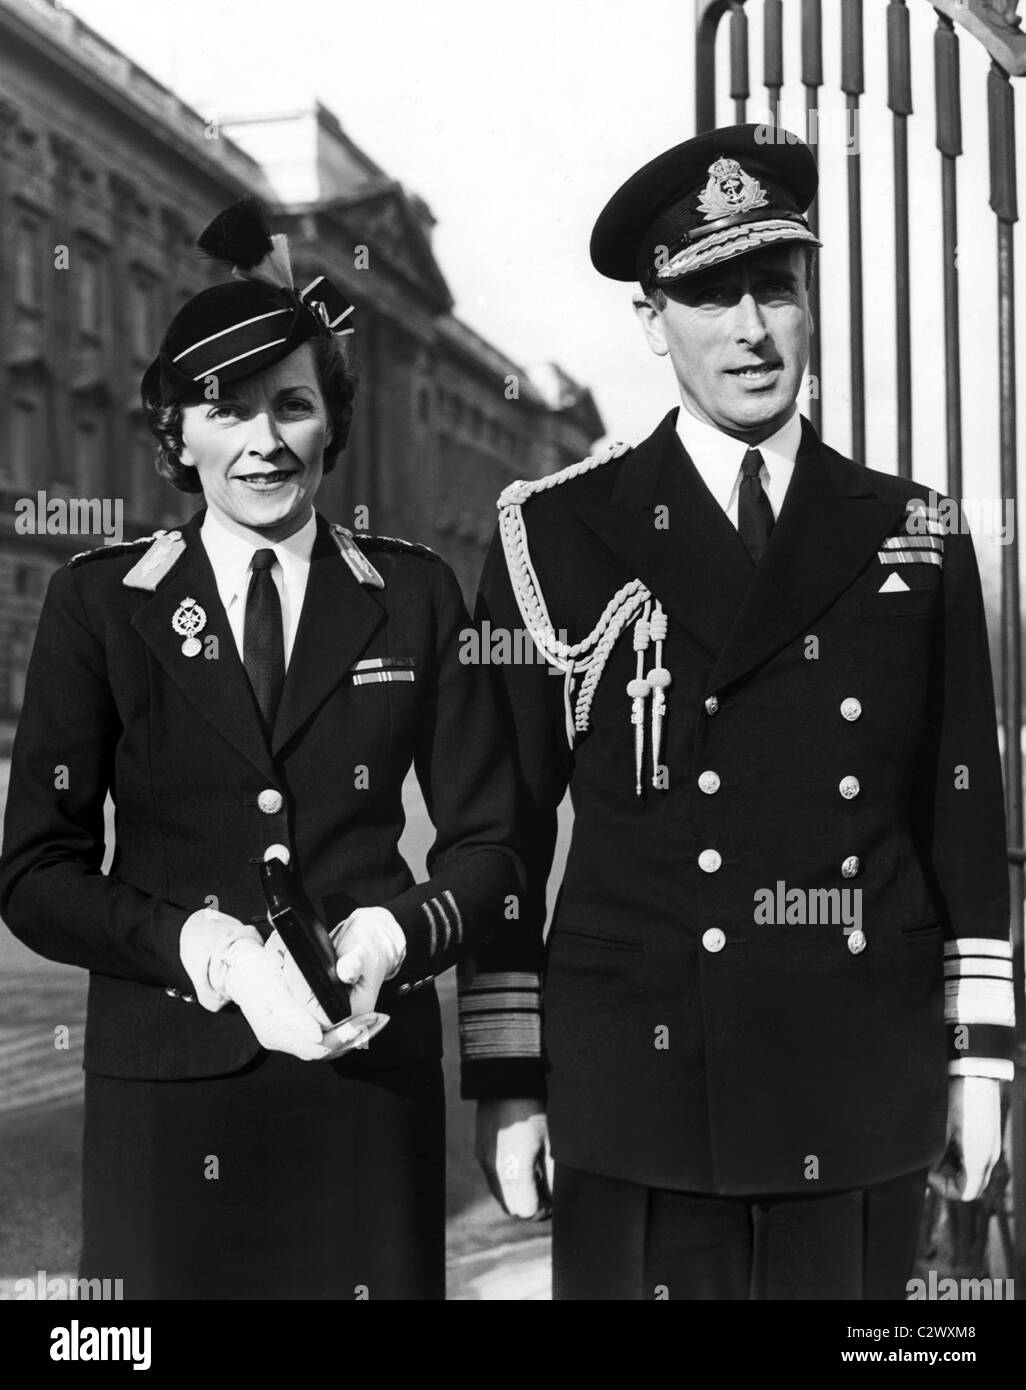 EDWINA MOUNTBATTEN et l'AMIRAL LOUIS MOUNTBATTEN LADY ET LORD MOUNTBATTEN DE BUR 02 juillet 1943 Buckingham Palace Londres Angleterre Banque D'Images